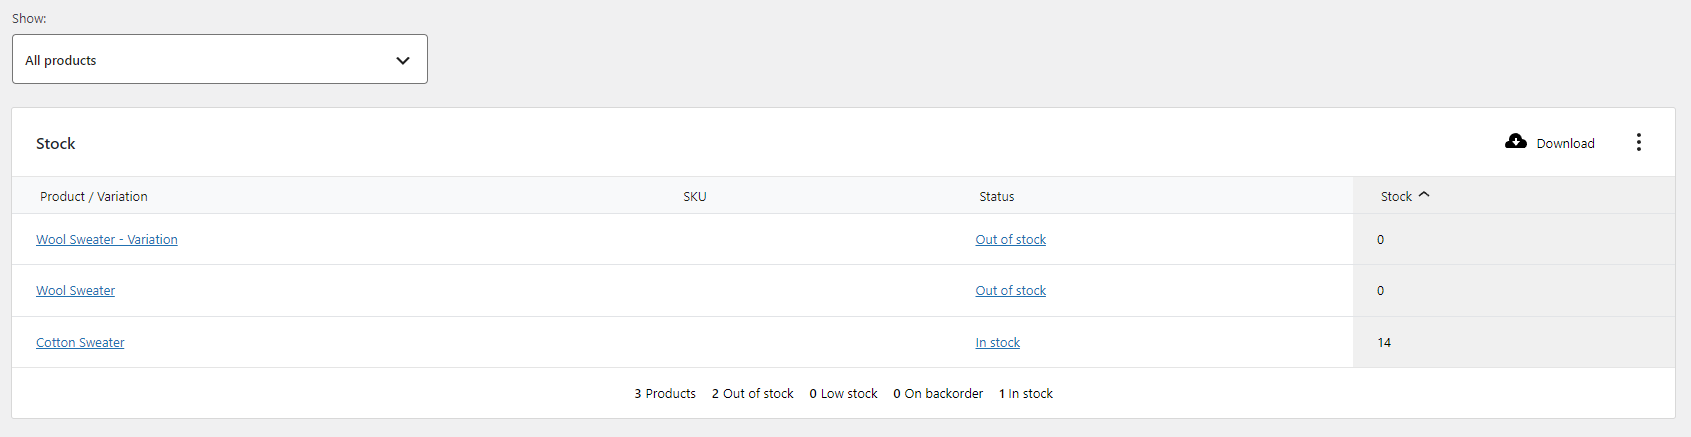 Visualização de relatórios de status de ações no WooCommerce